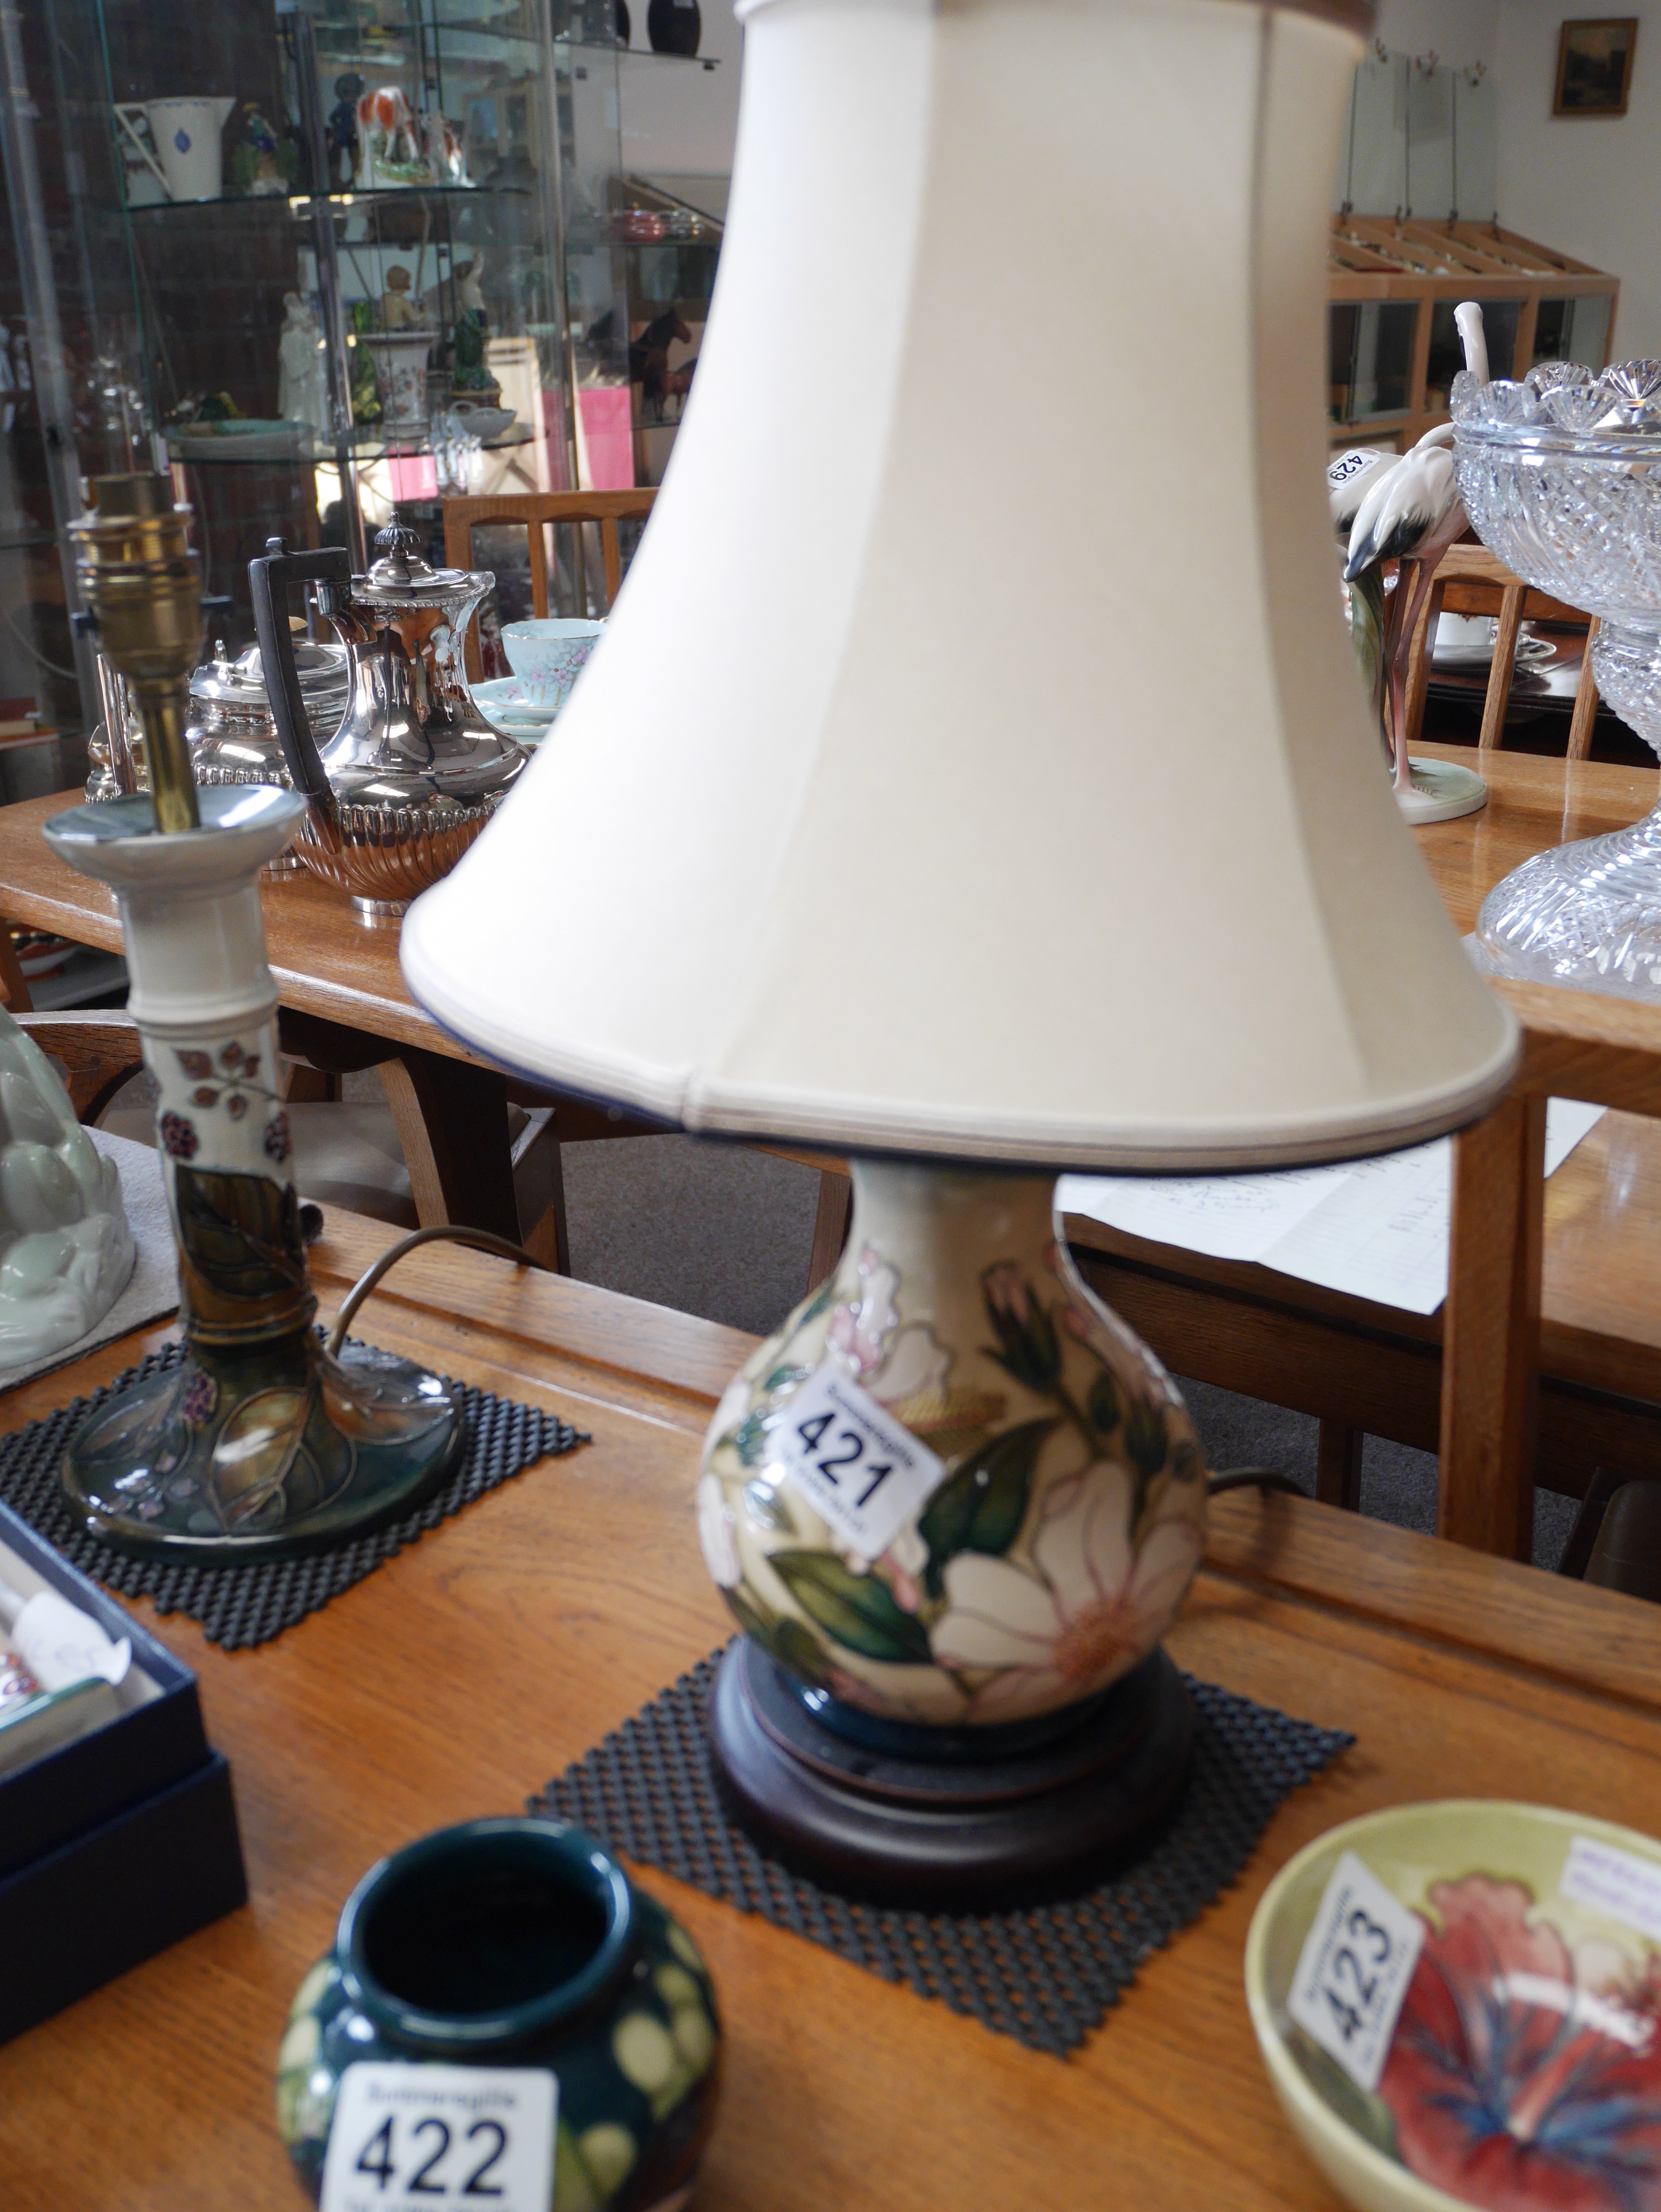 Moorcroft Magnolia table lamp